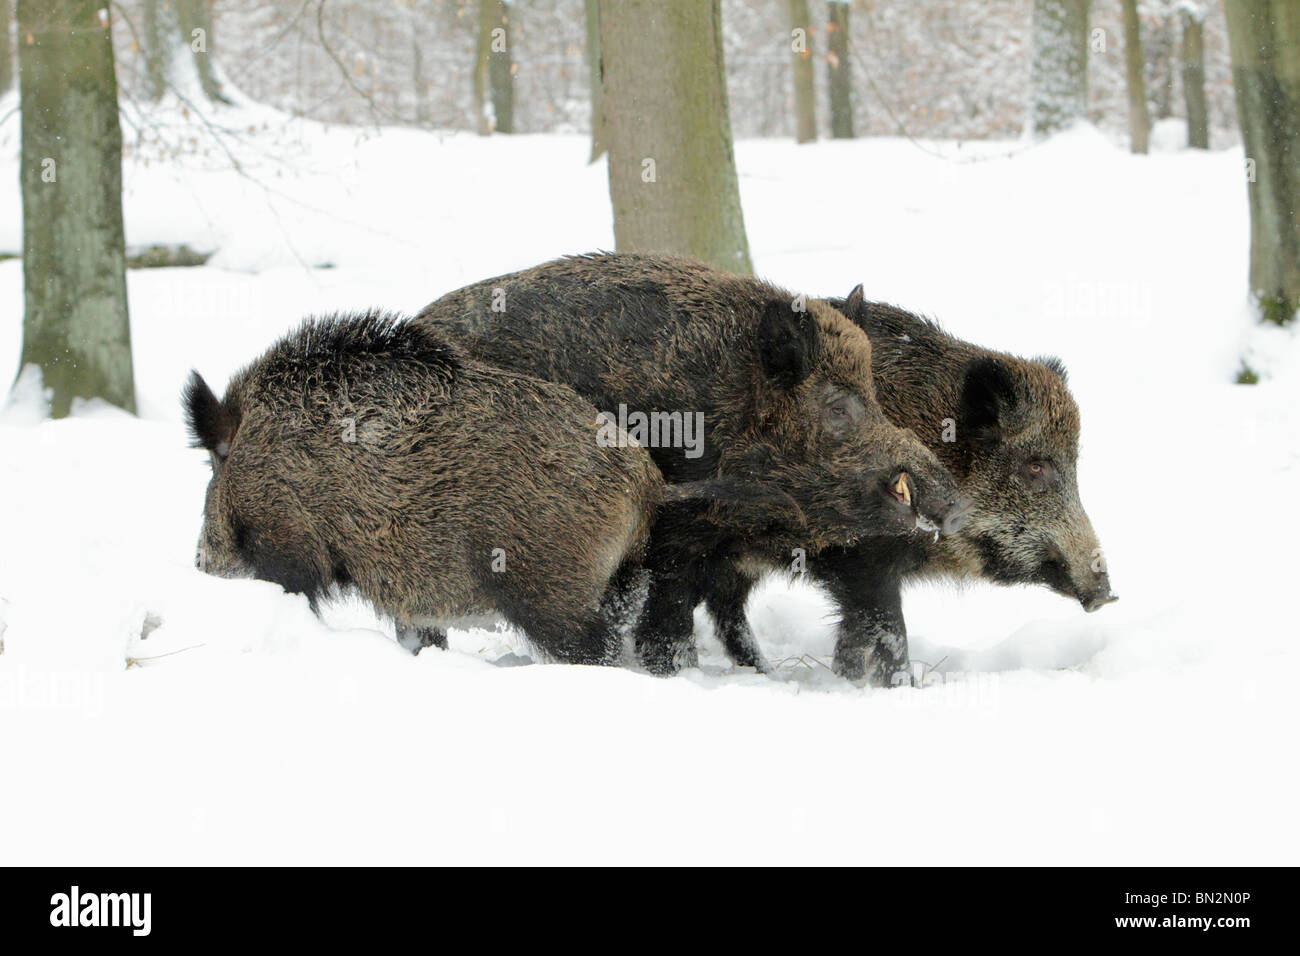 Européen de porc ou de sanglier (Sus scrofa) Allemagne, sanglier, avec deux truies pendant la saison des amours, de l'hiver, Allemagne Banque D'Images